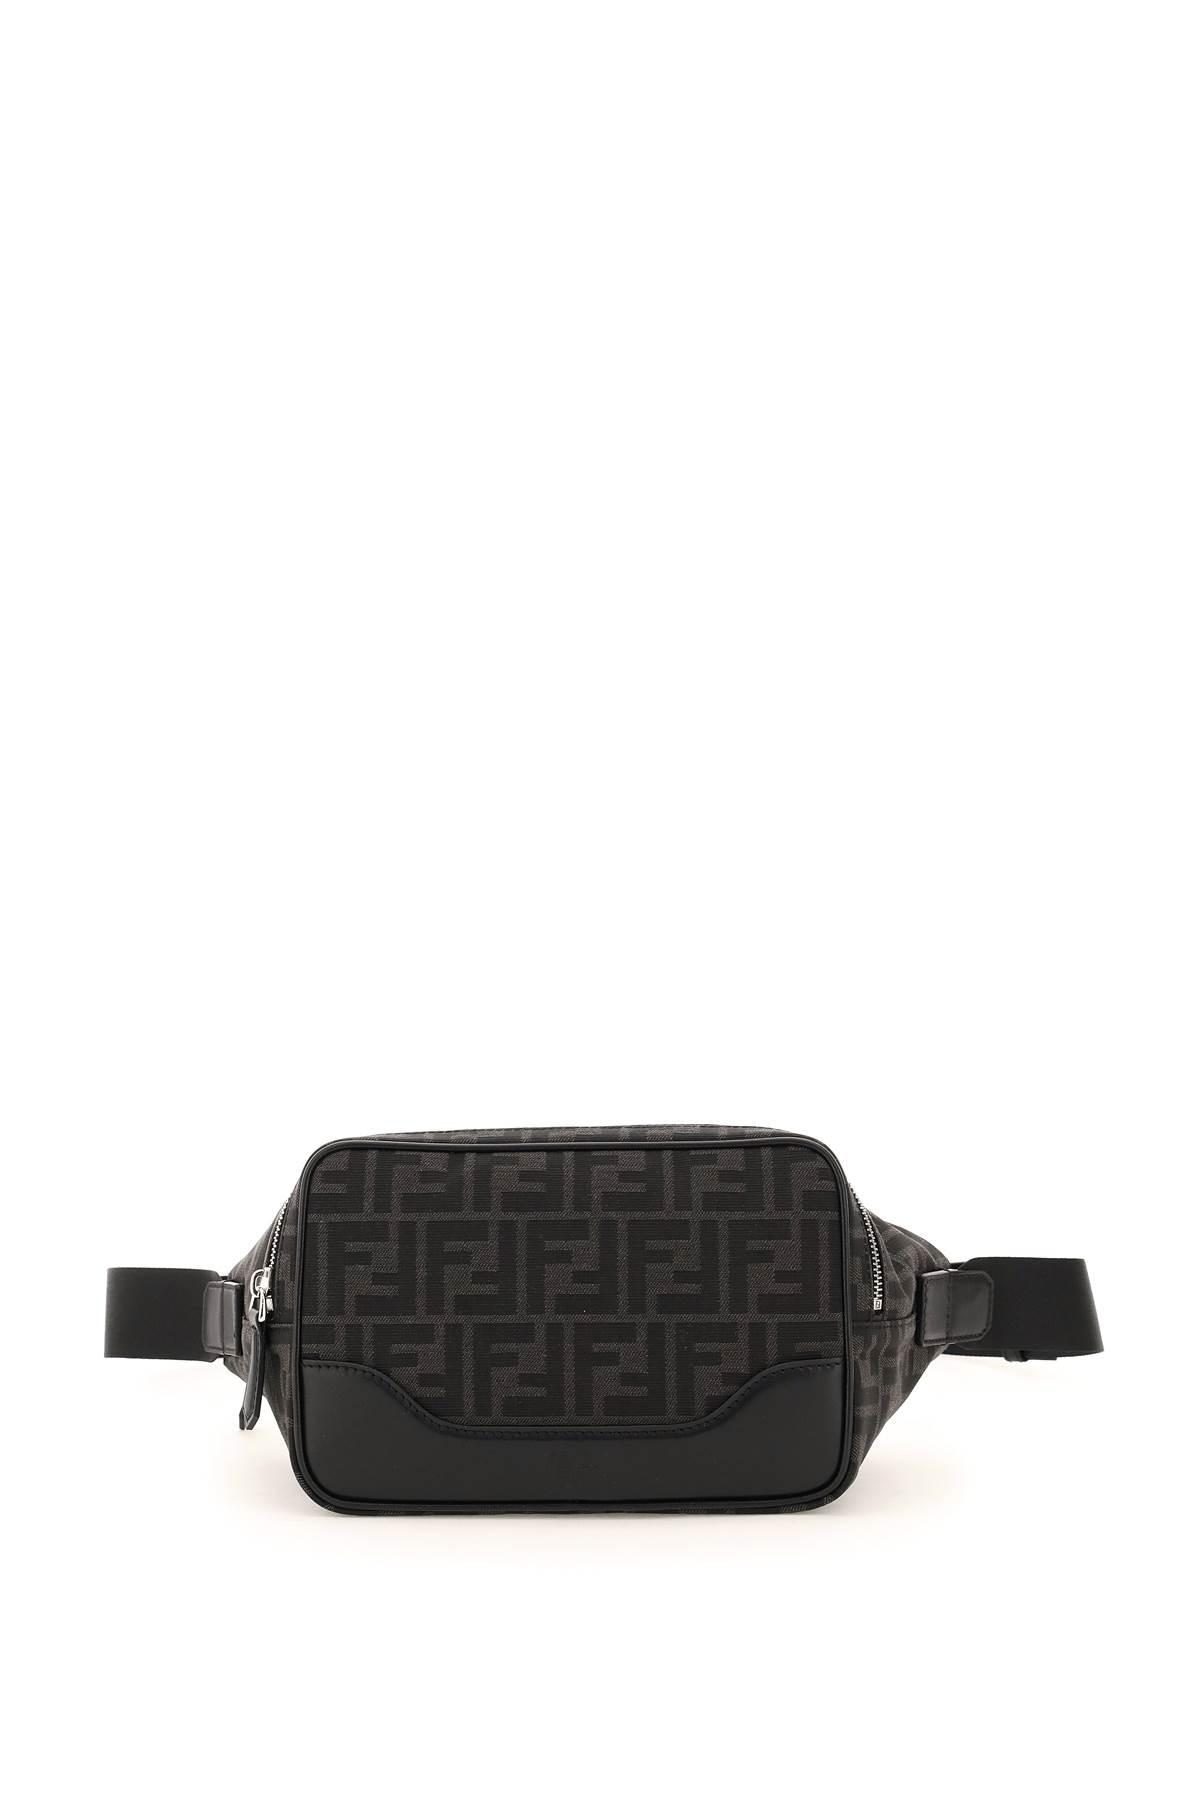 FENDI Fab Leather Crossbody Bag Black - 25% OFF